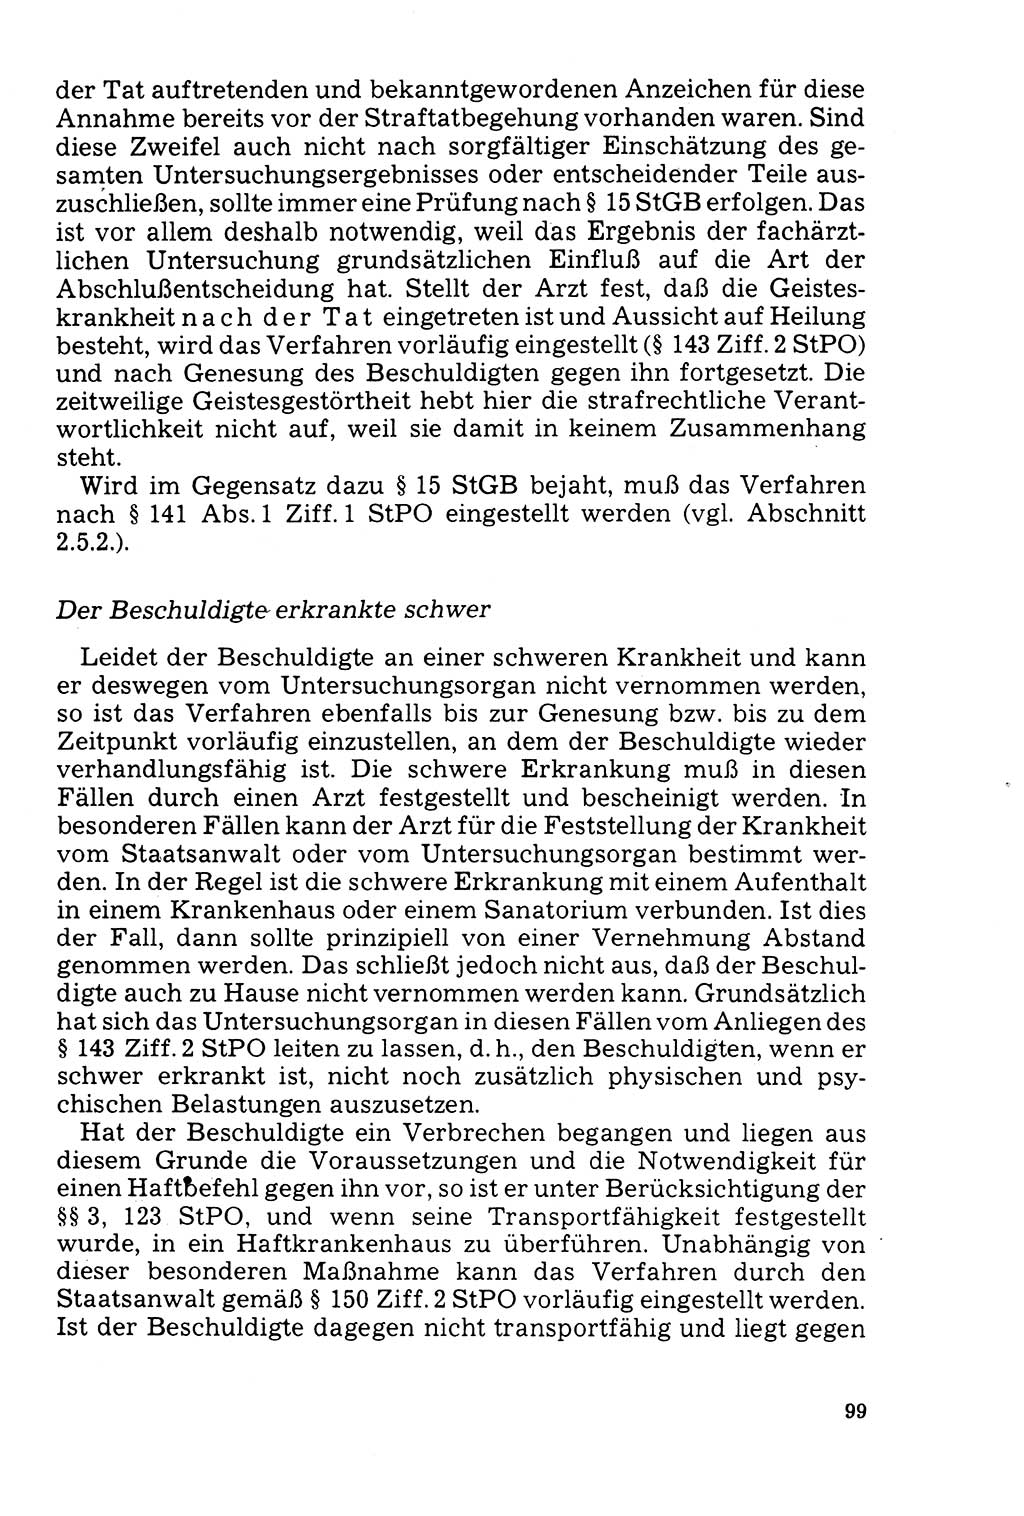 Der Abschluß des Ermittlungsverfahrens [Deutsche Demokratische Republik (DDR)] 1978, Seite 99 (Abschl. EV DDR 1978, S. 99)